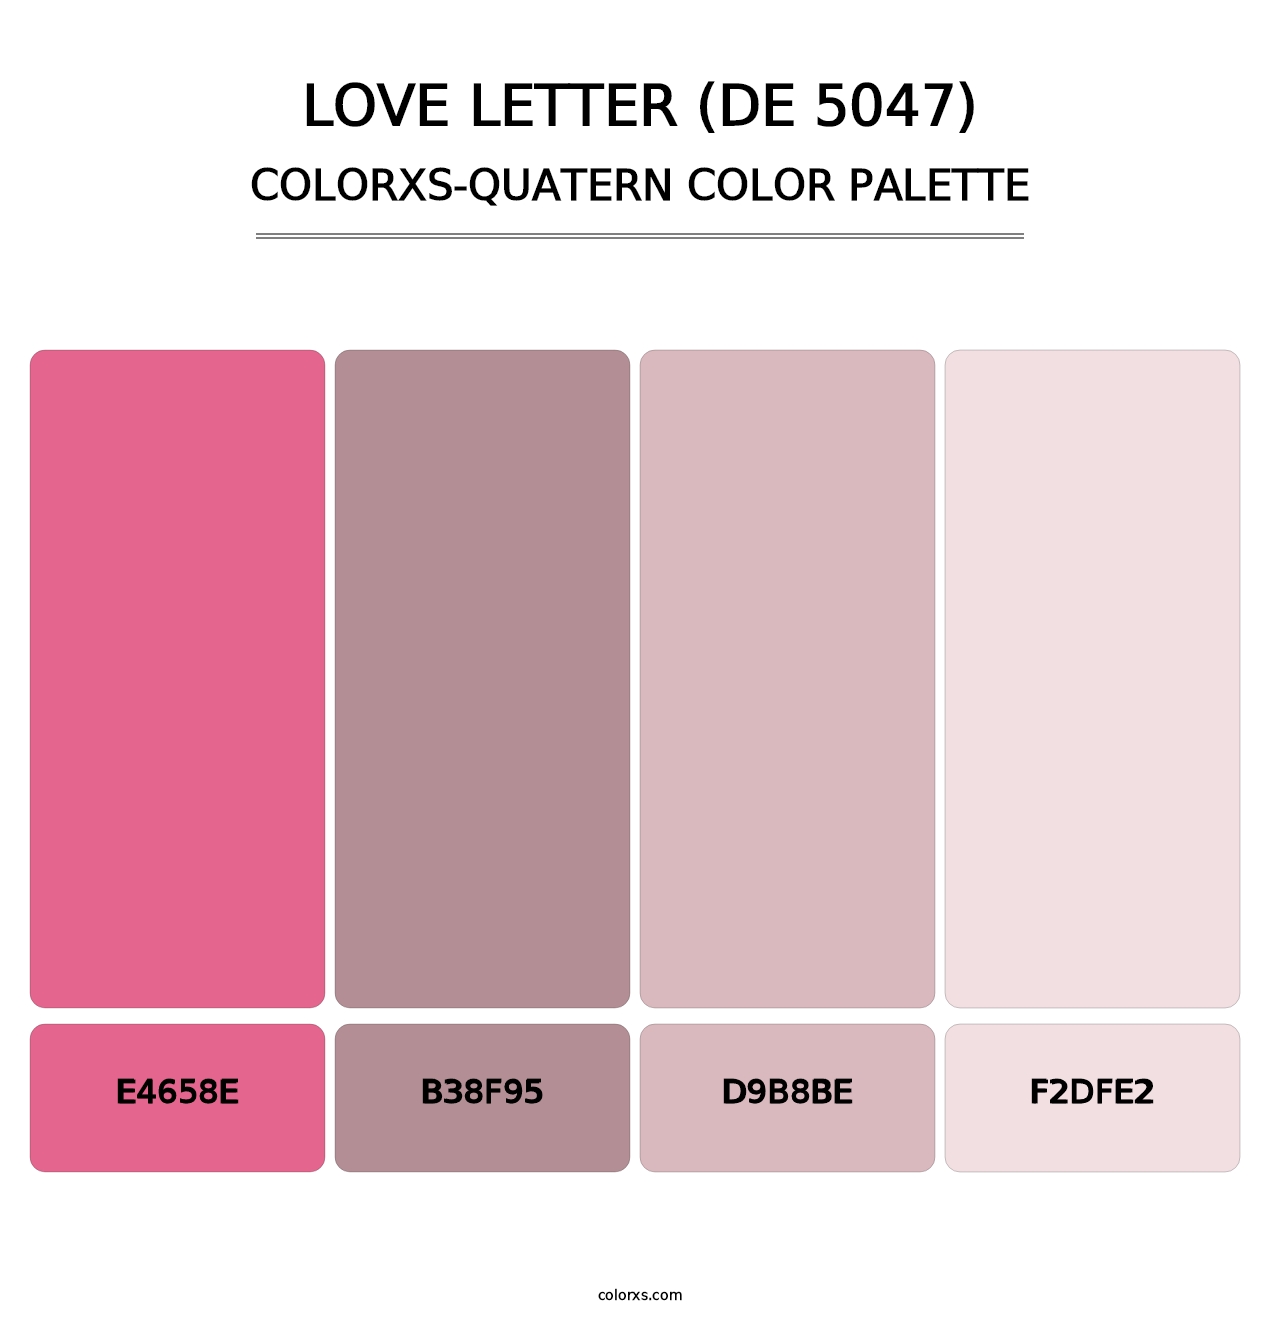 Love Letter (DE 5047) - Colorxs Quatern Palette